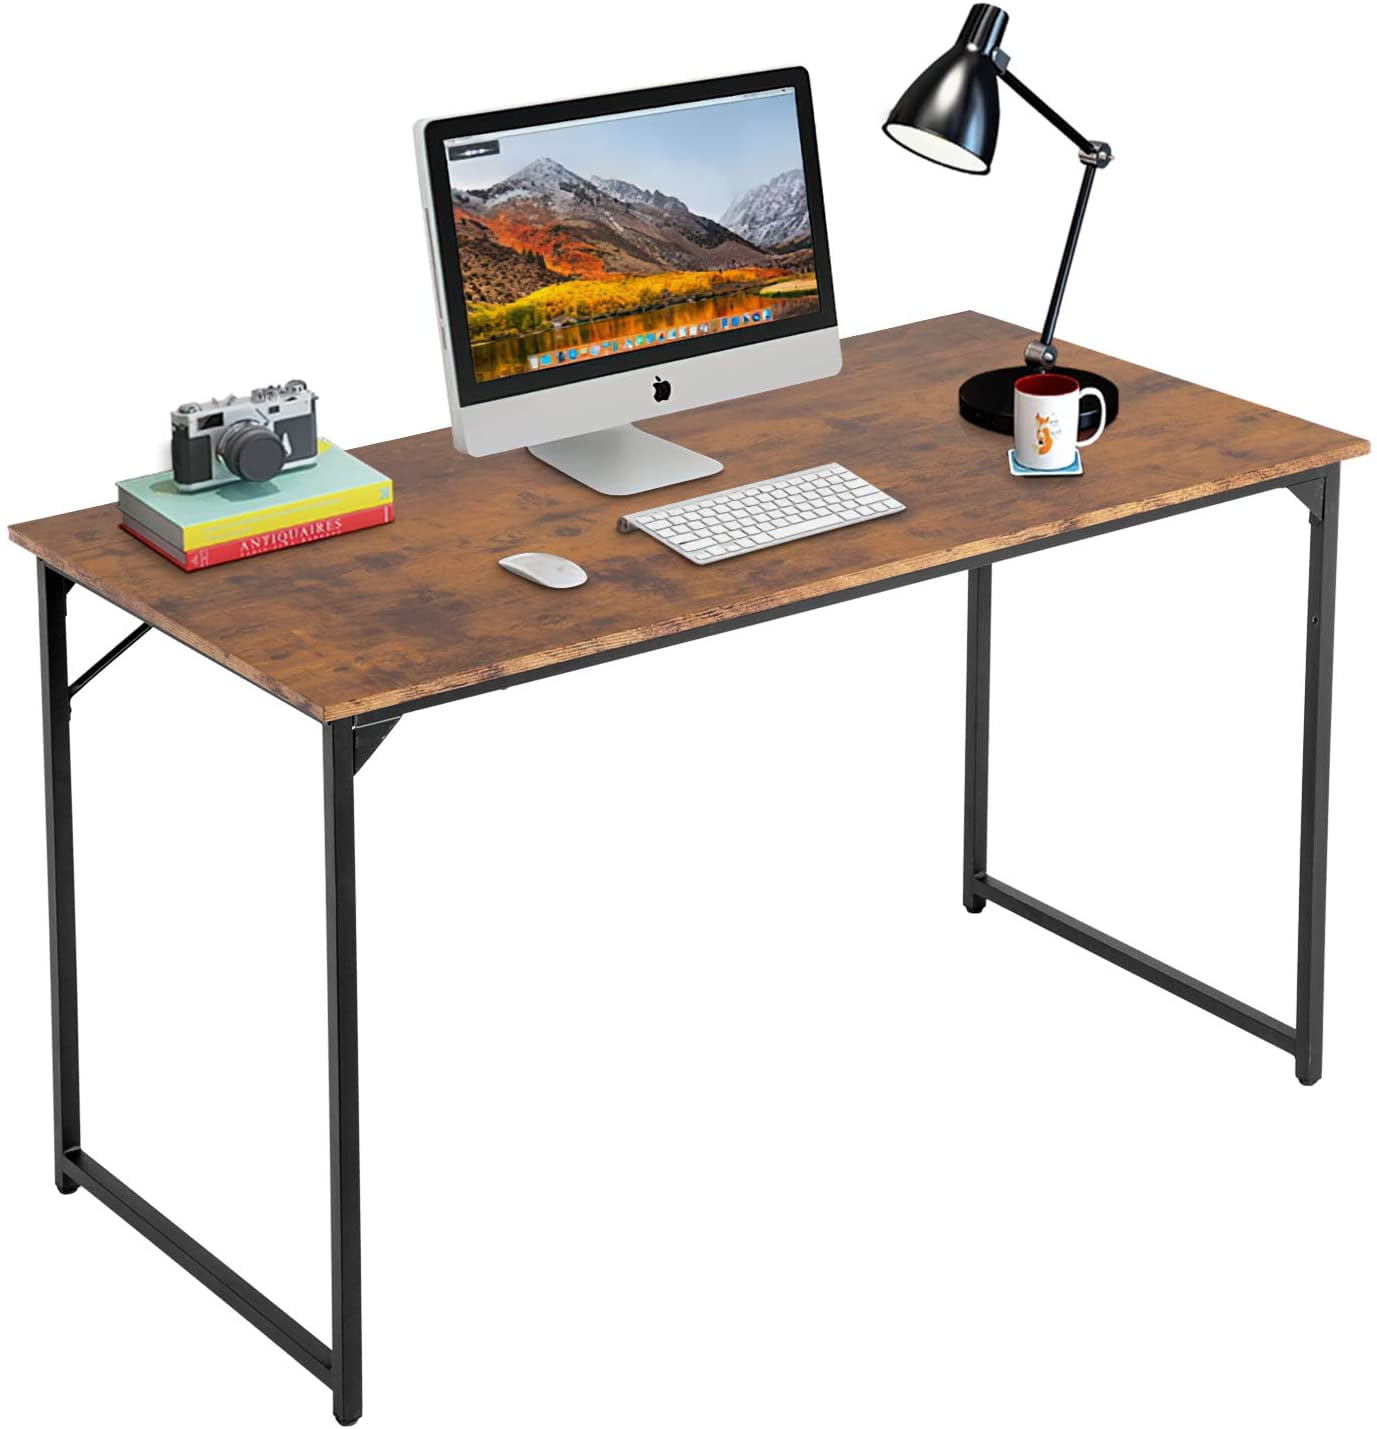 SUNLEI Computer Desk 47 inch Home Office Desks, Gaming Writing Desk Large  Work Desk Study Workstation, Laptop Stand for Desk, Simple Assembly, Steel